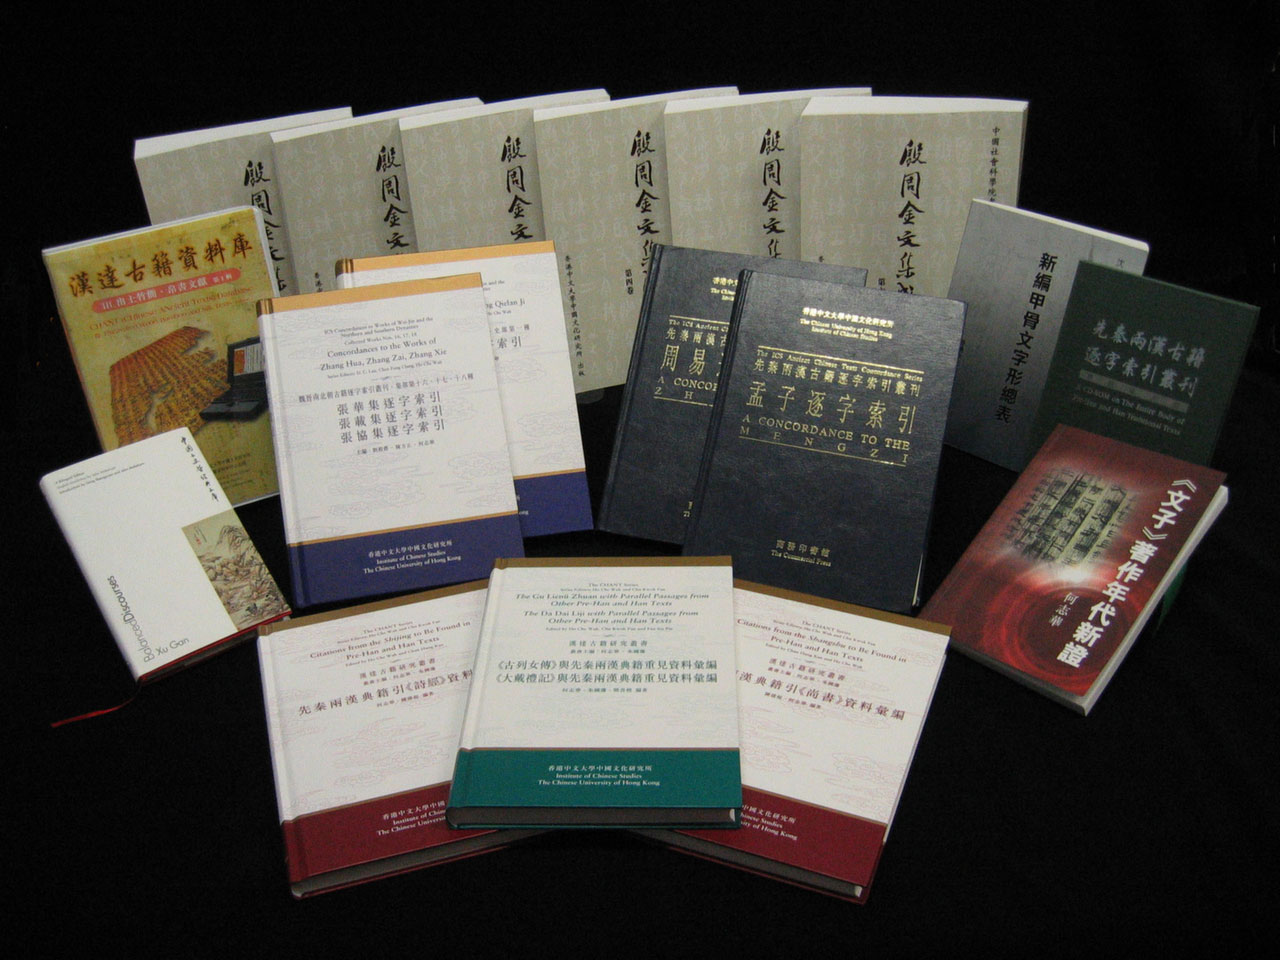 劉殿爵中國古籍研究中心旨在全面整理中國古代傳世及出土文獻，並建立電腦資料庫，藉此進行多項研究工作，然後通過各種媒體出版研究成果。